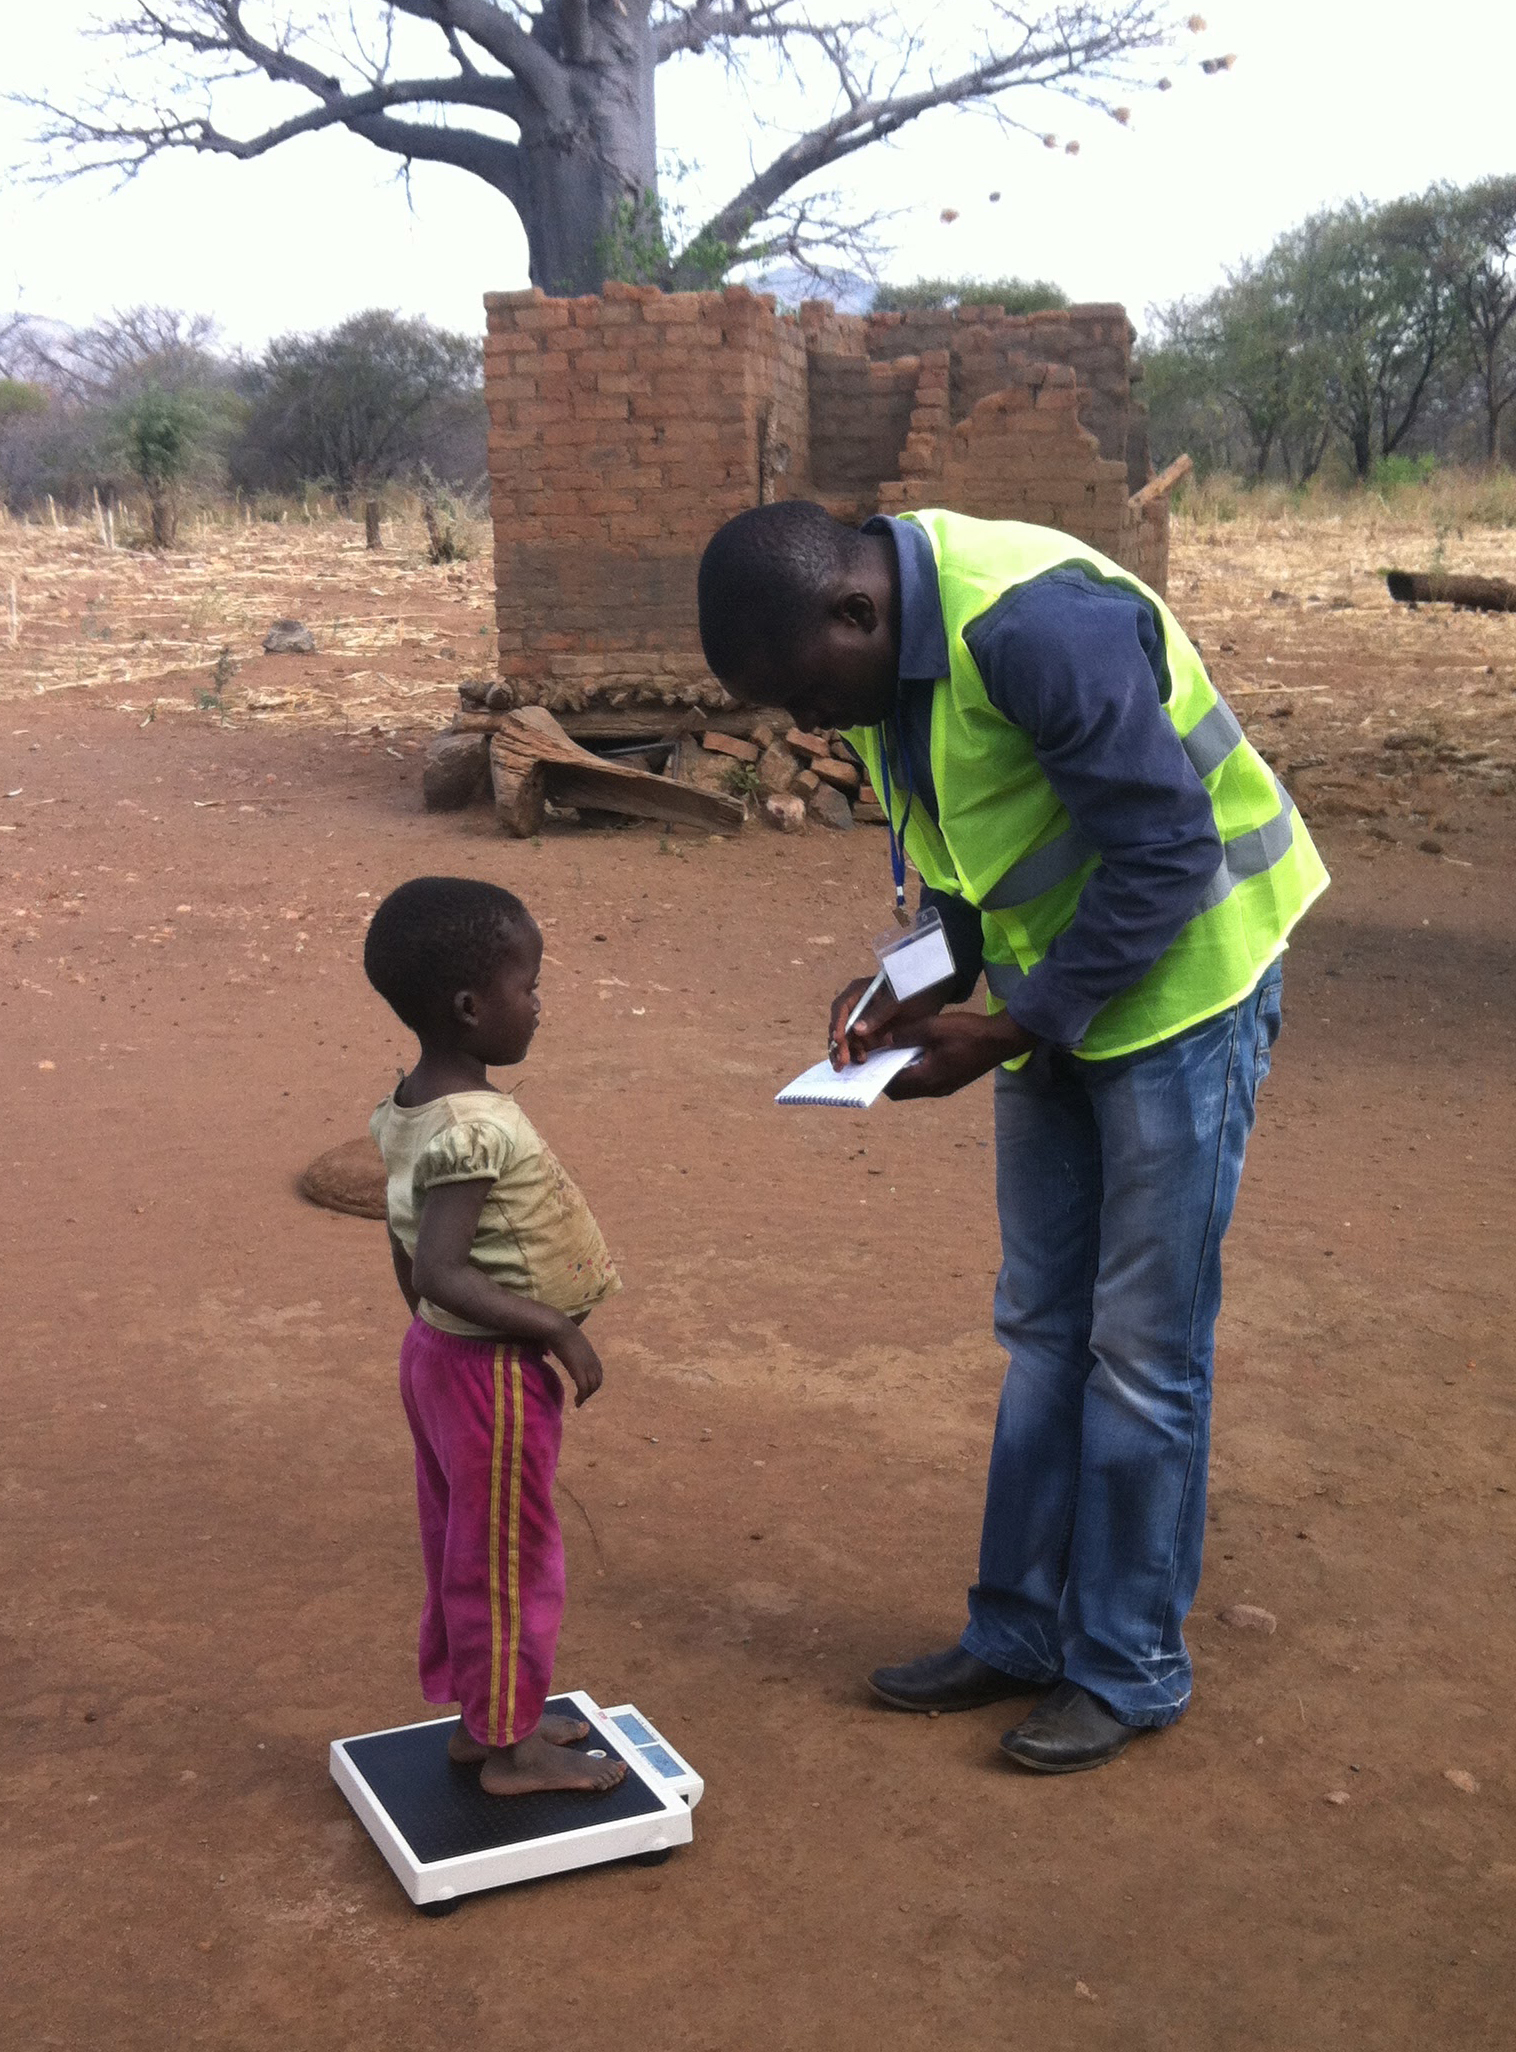 Man weighing child in Zimbabwe